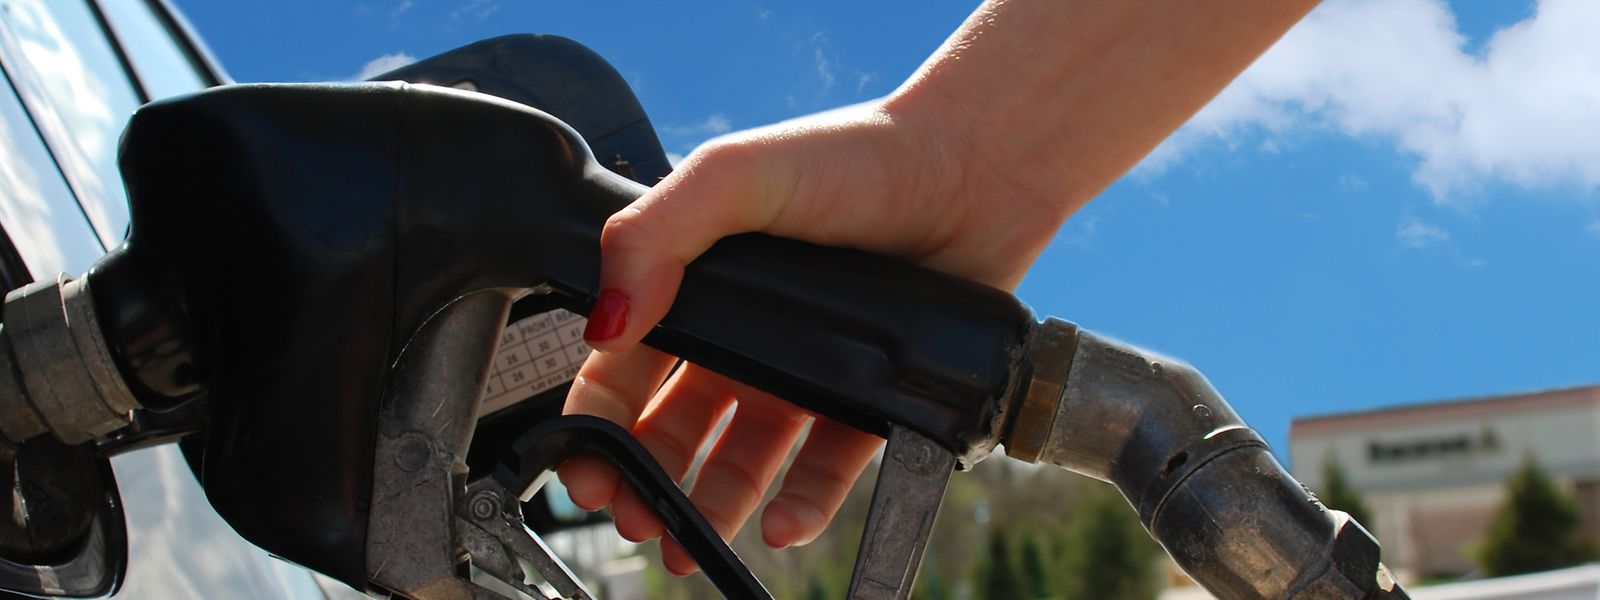 Si le diesel va connaître une baisse importante d'environ 5 centimes, la baisse du prix de l'essence sera moins marquée.